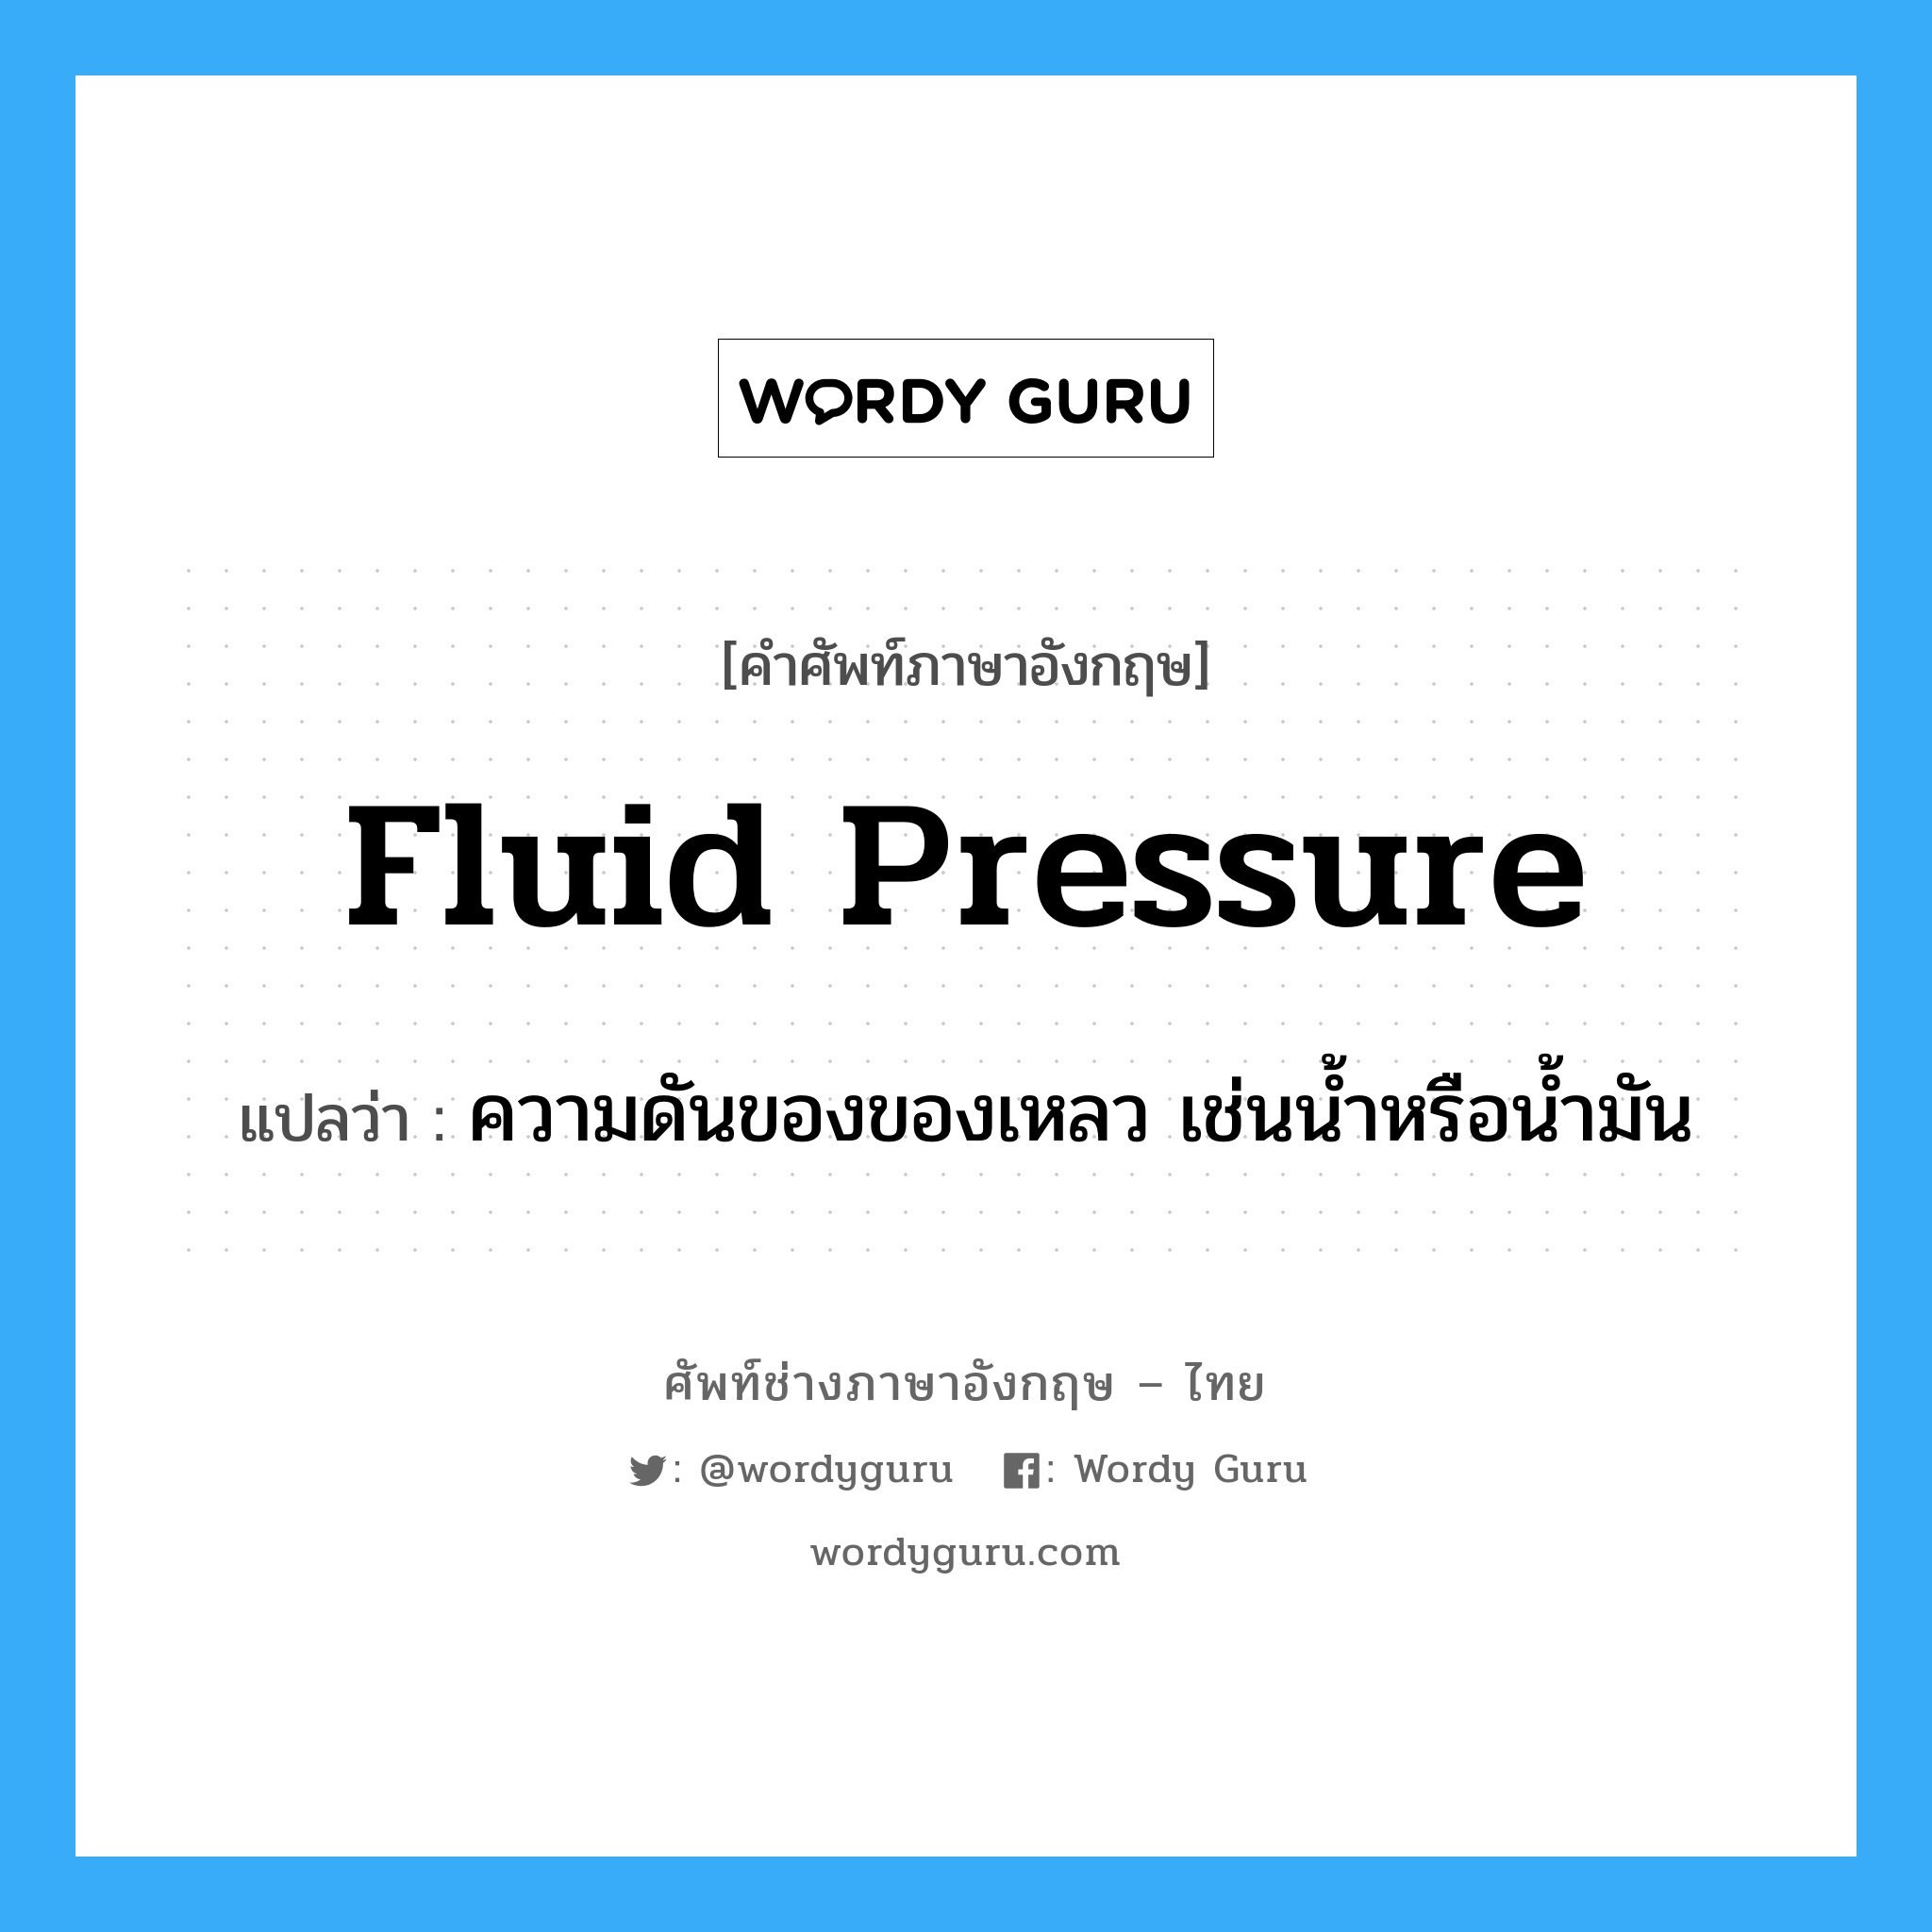 fluid pressure แปลว่า?, คำศัพท์ช่างภาษาอังกฤษ - ไทย fluid pressure คำศัพท์ภาษาอังกฤษ fluid pressure แปลว่า ความดันของของเหลว เช่นน้ำหรือน้ำมัน